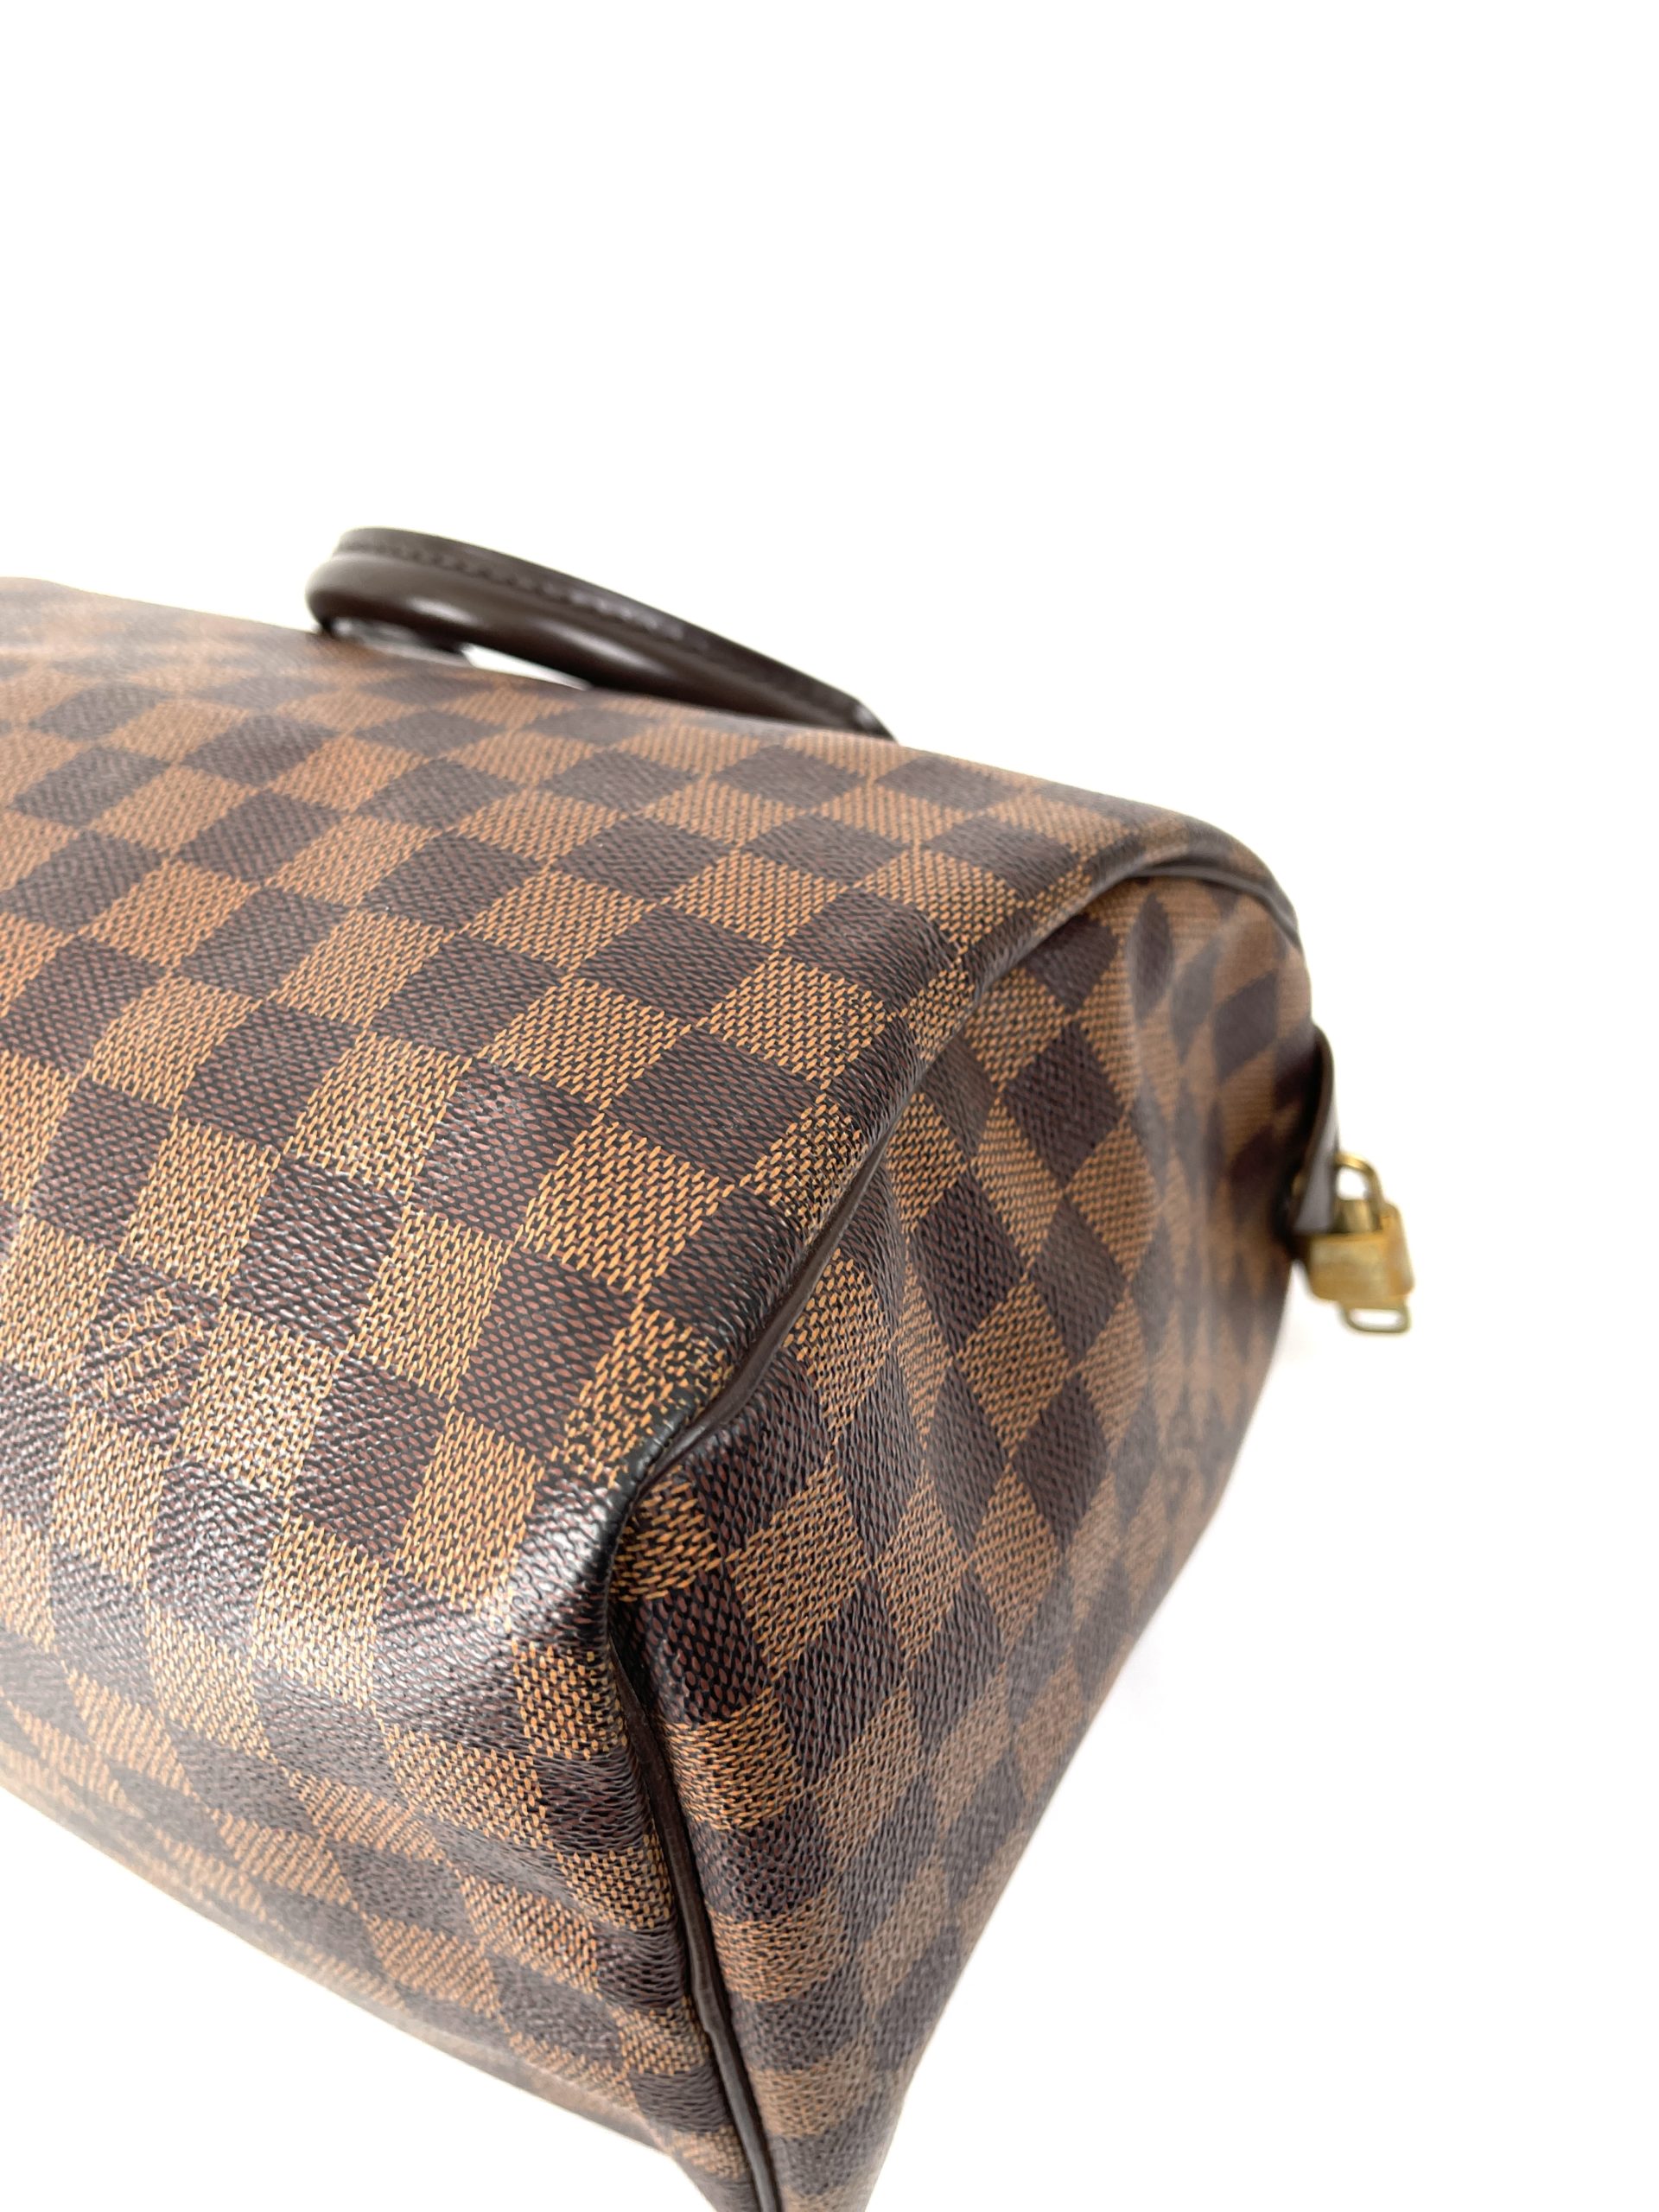 Auth Louis Vuitton Damier Speedy 35 N41363 Women's Handbag